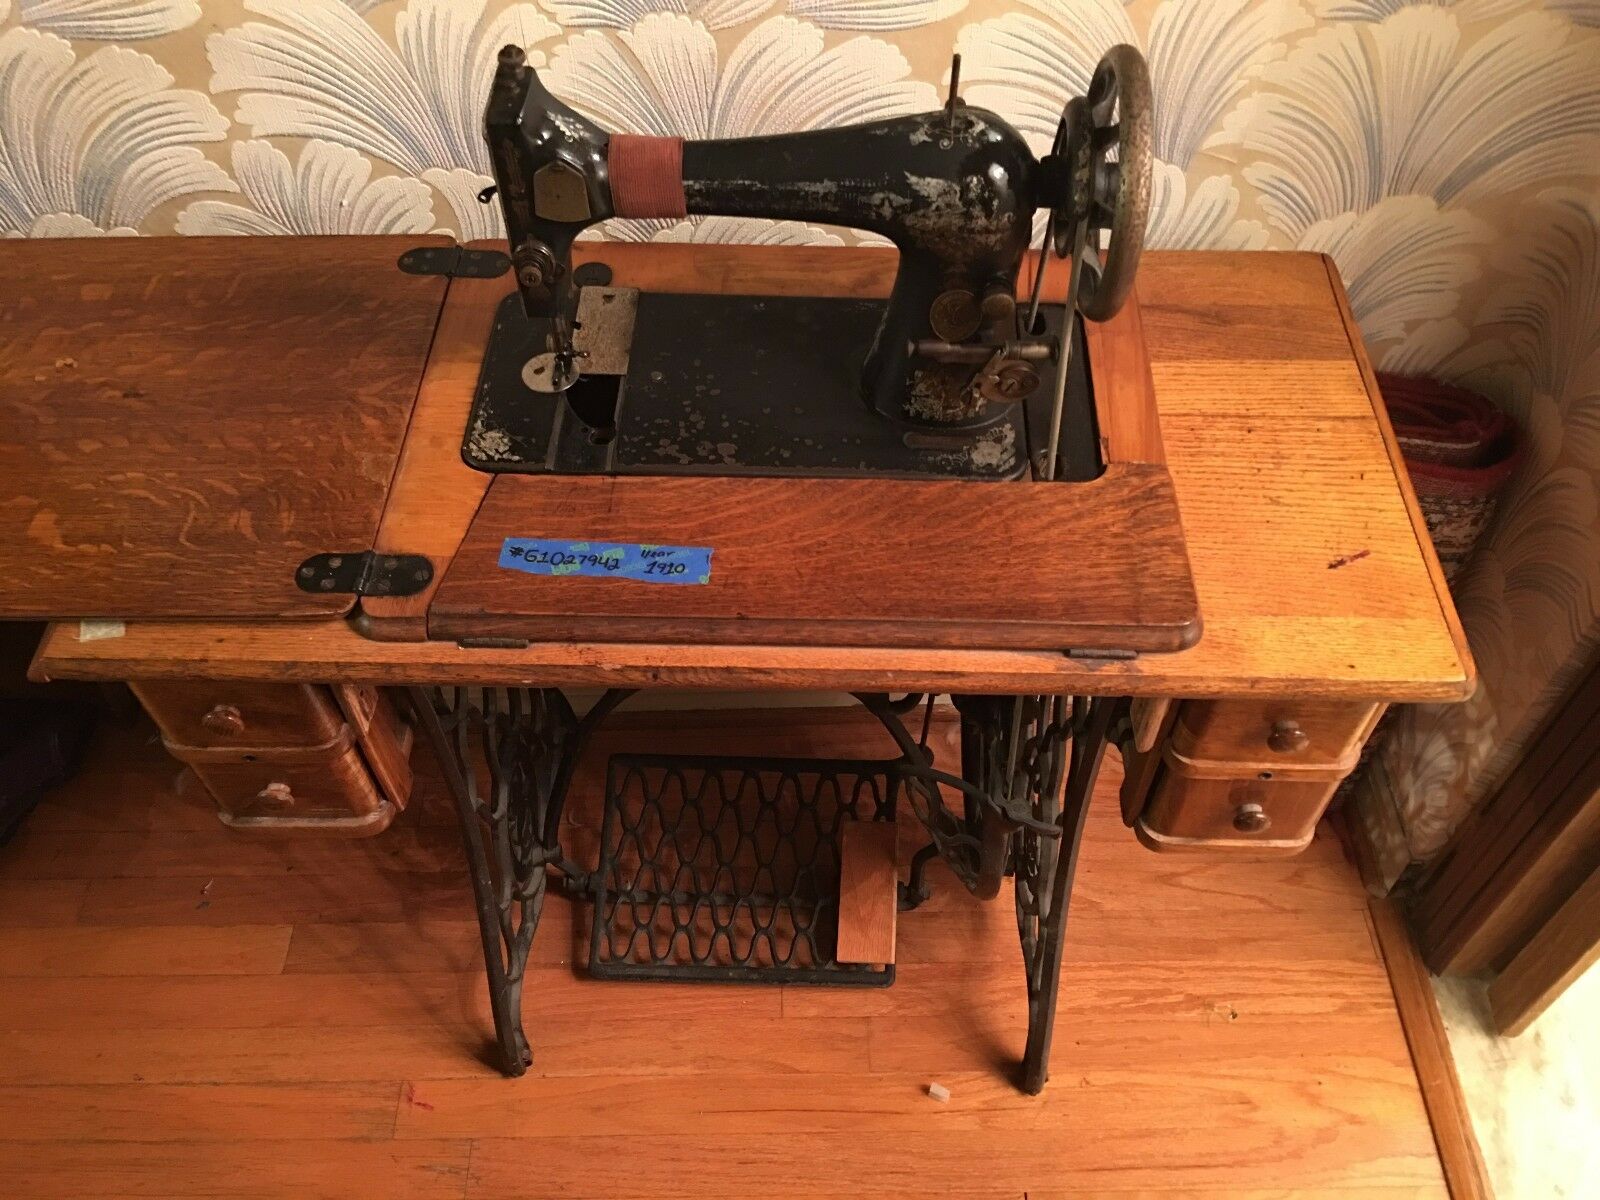 Anker Sewing machine 1920's Art Nouveau treadle model